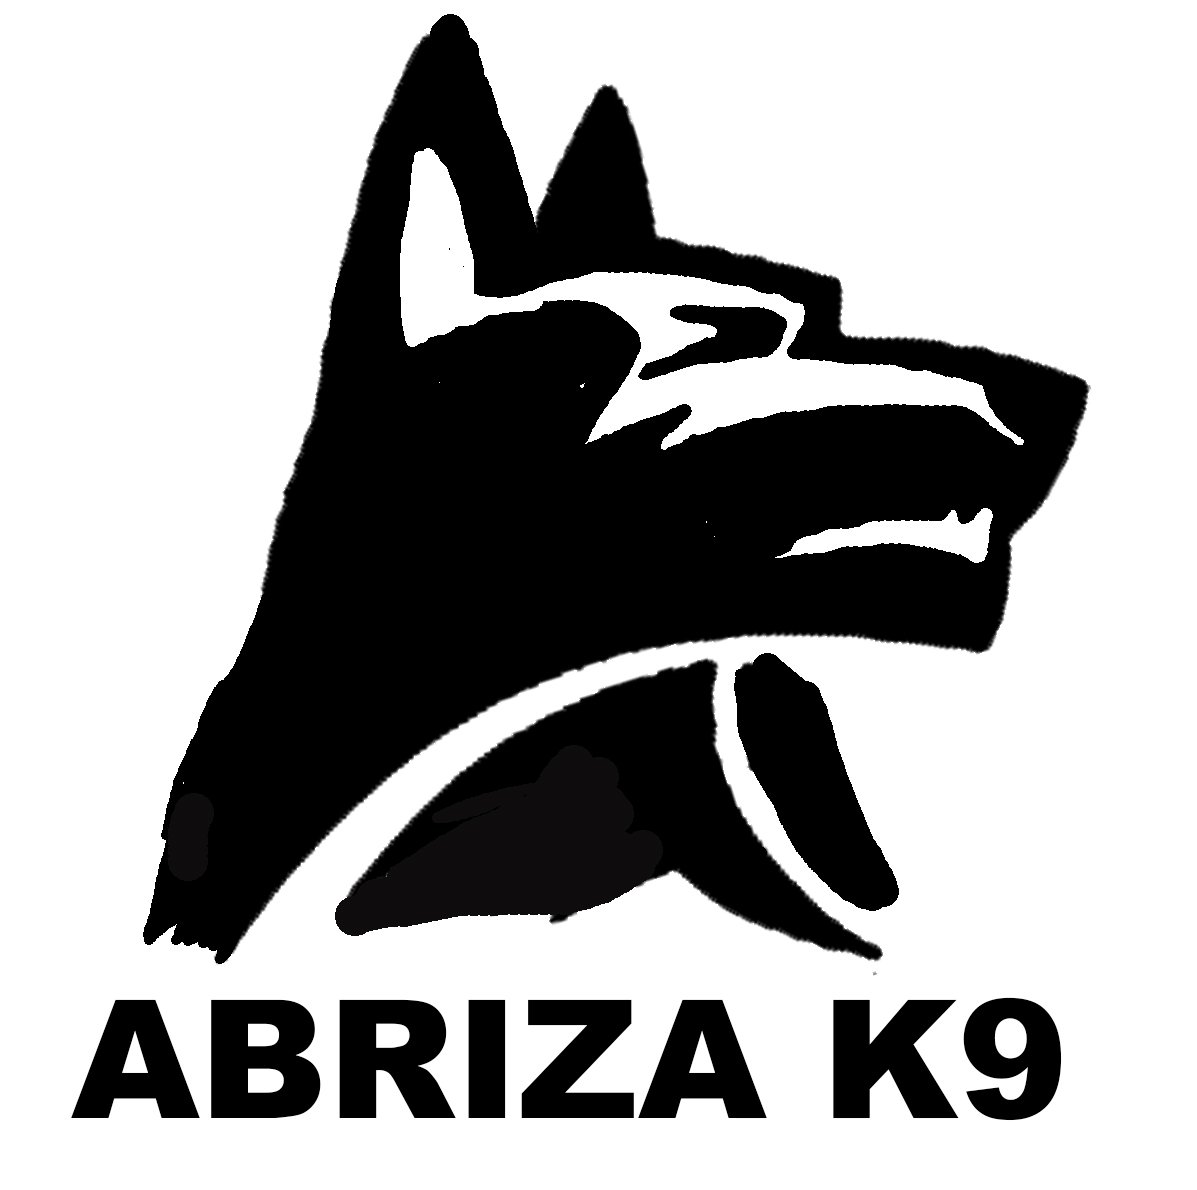 ABRIZA K9